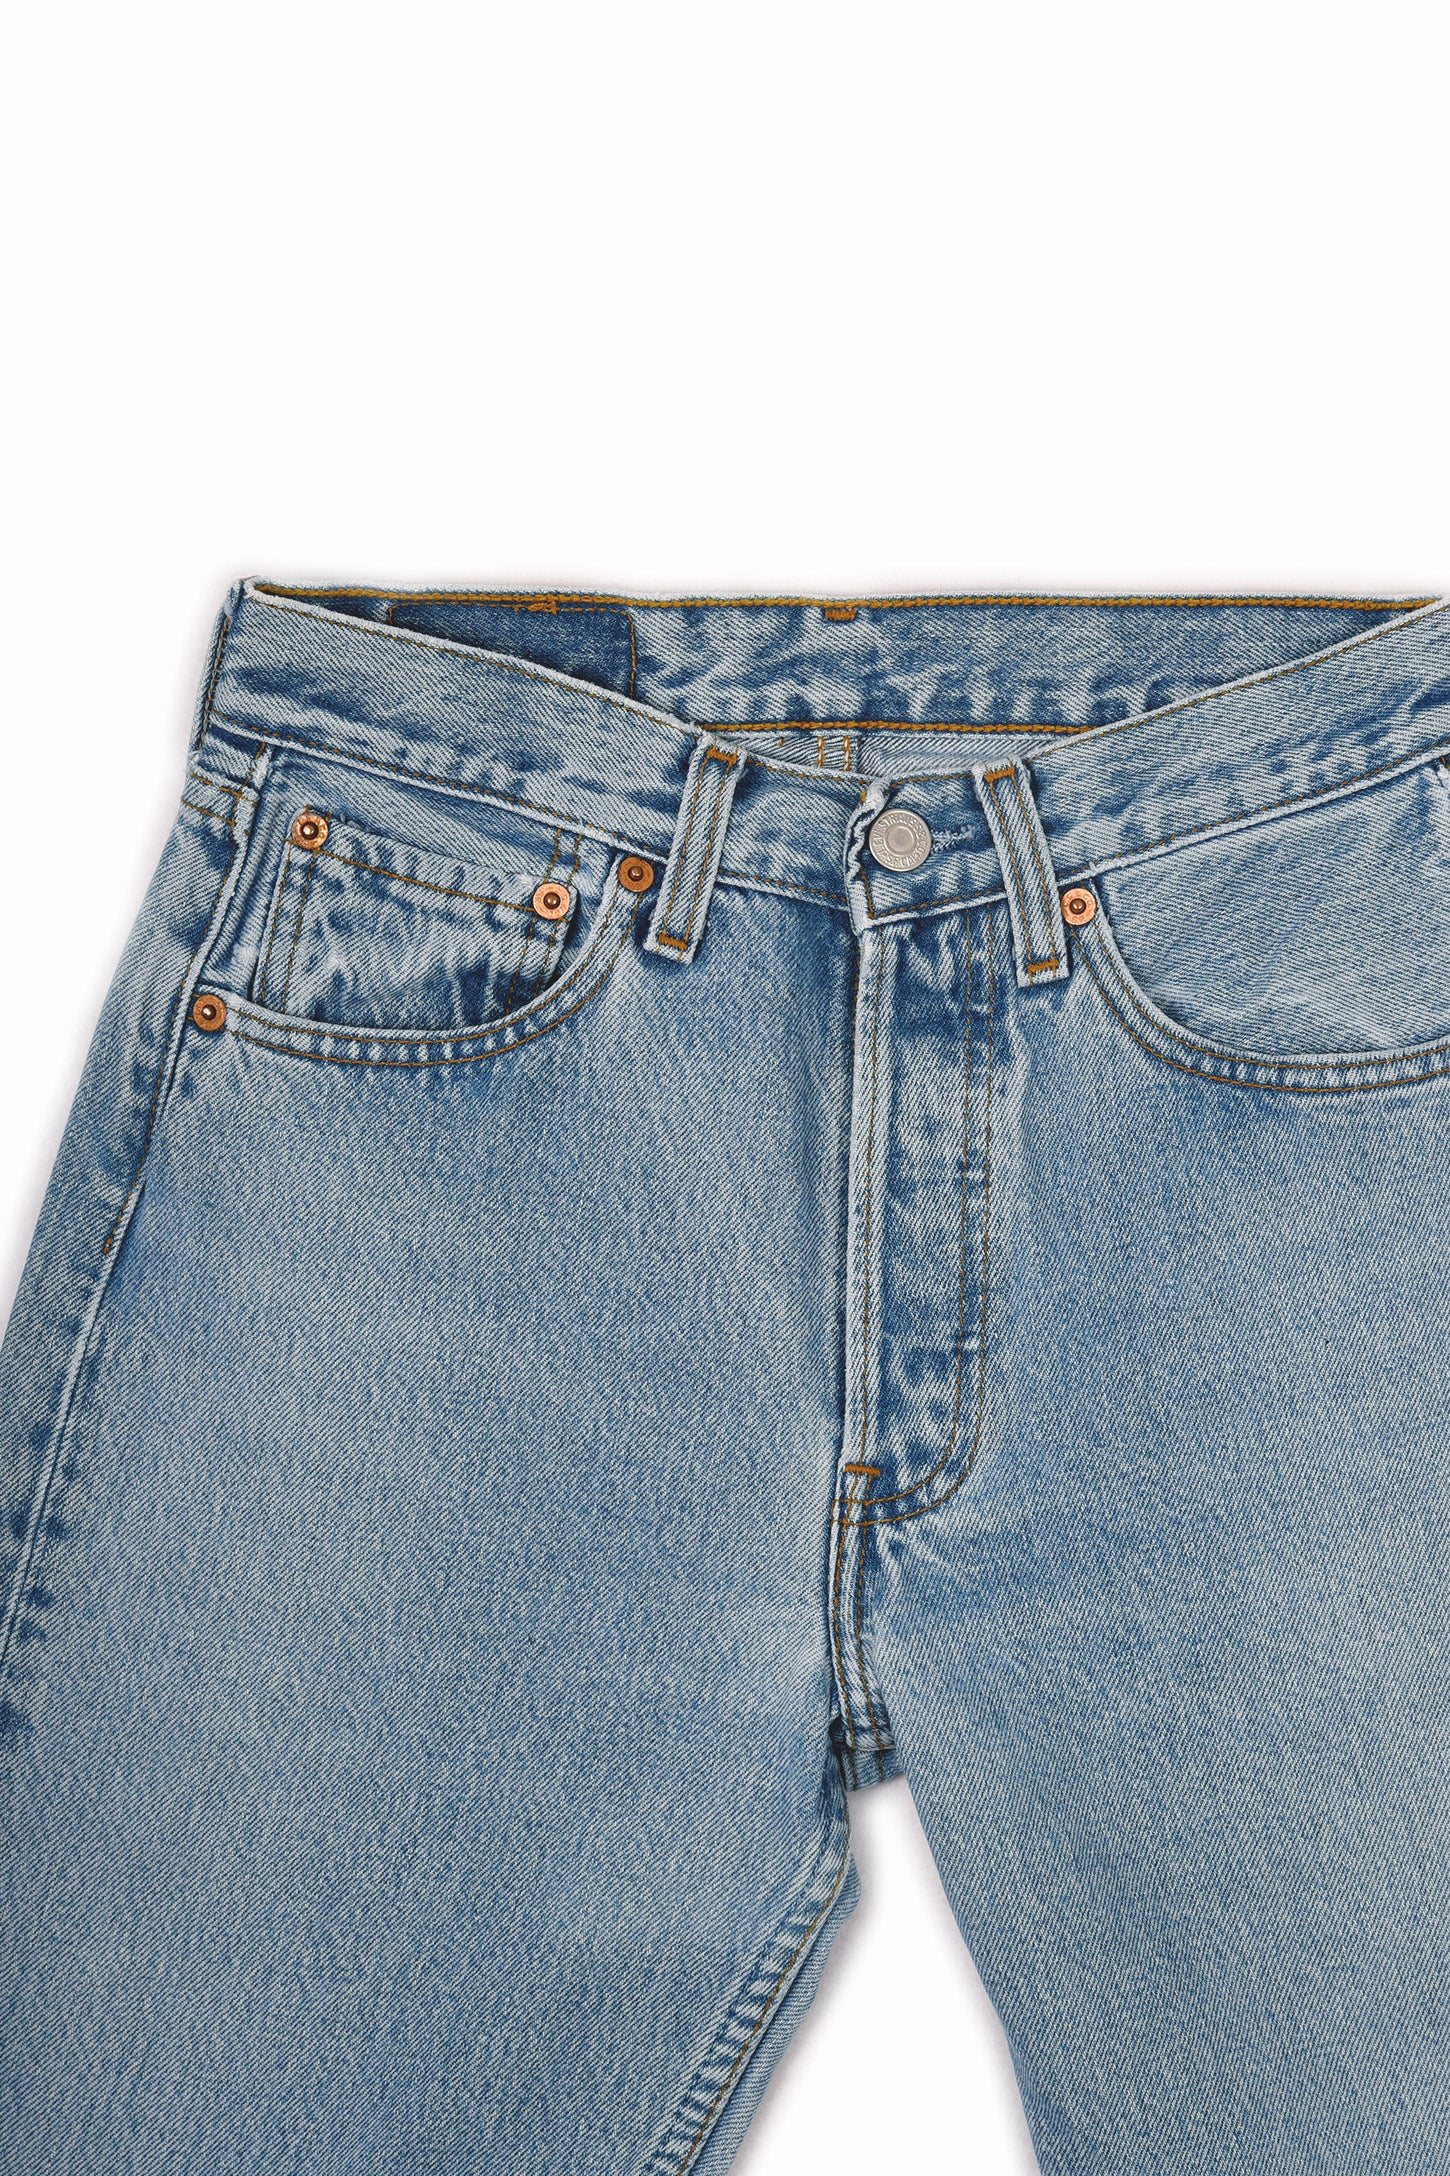 Levi's 501 Original Fit Jeans Blue 